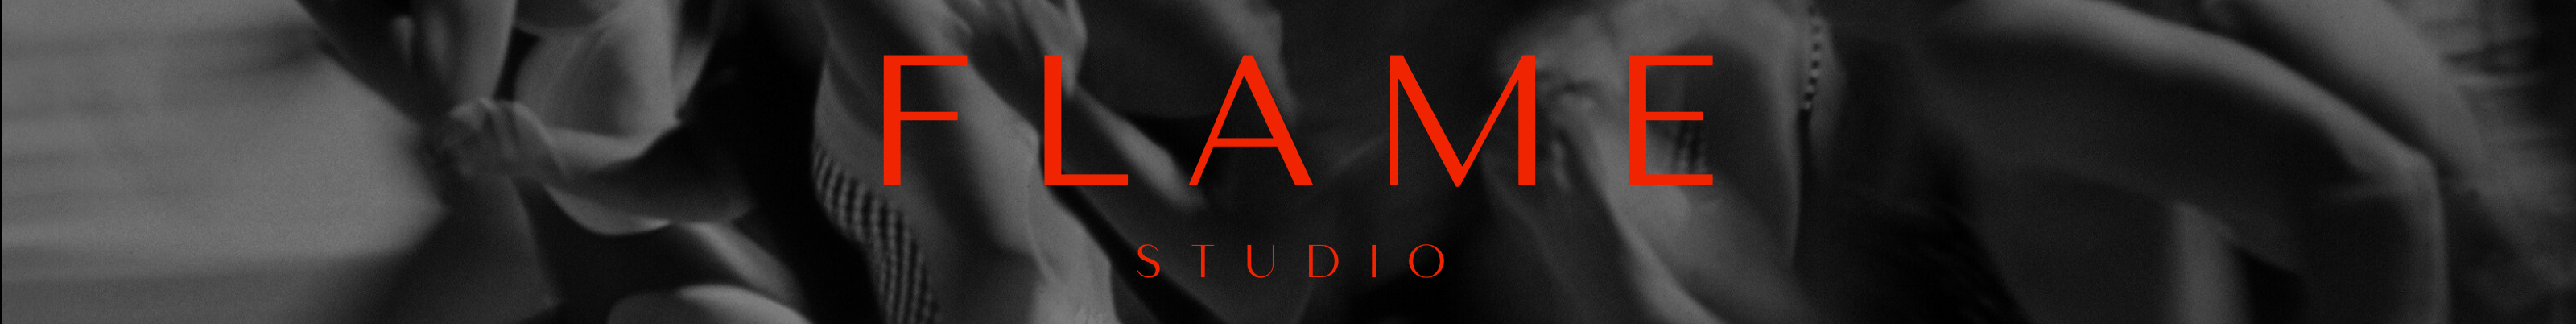 Flame Studio's profile banner